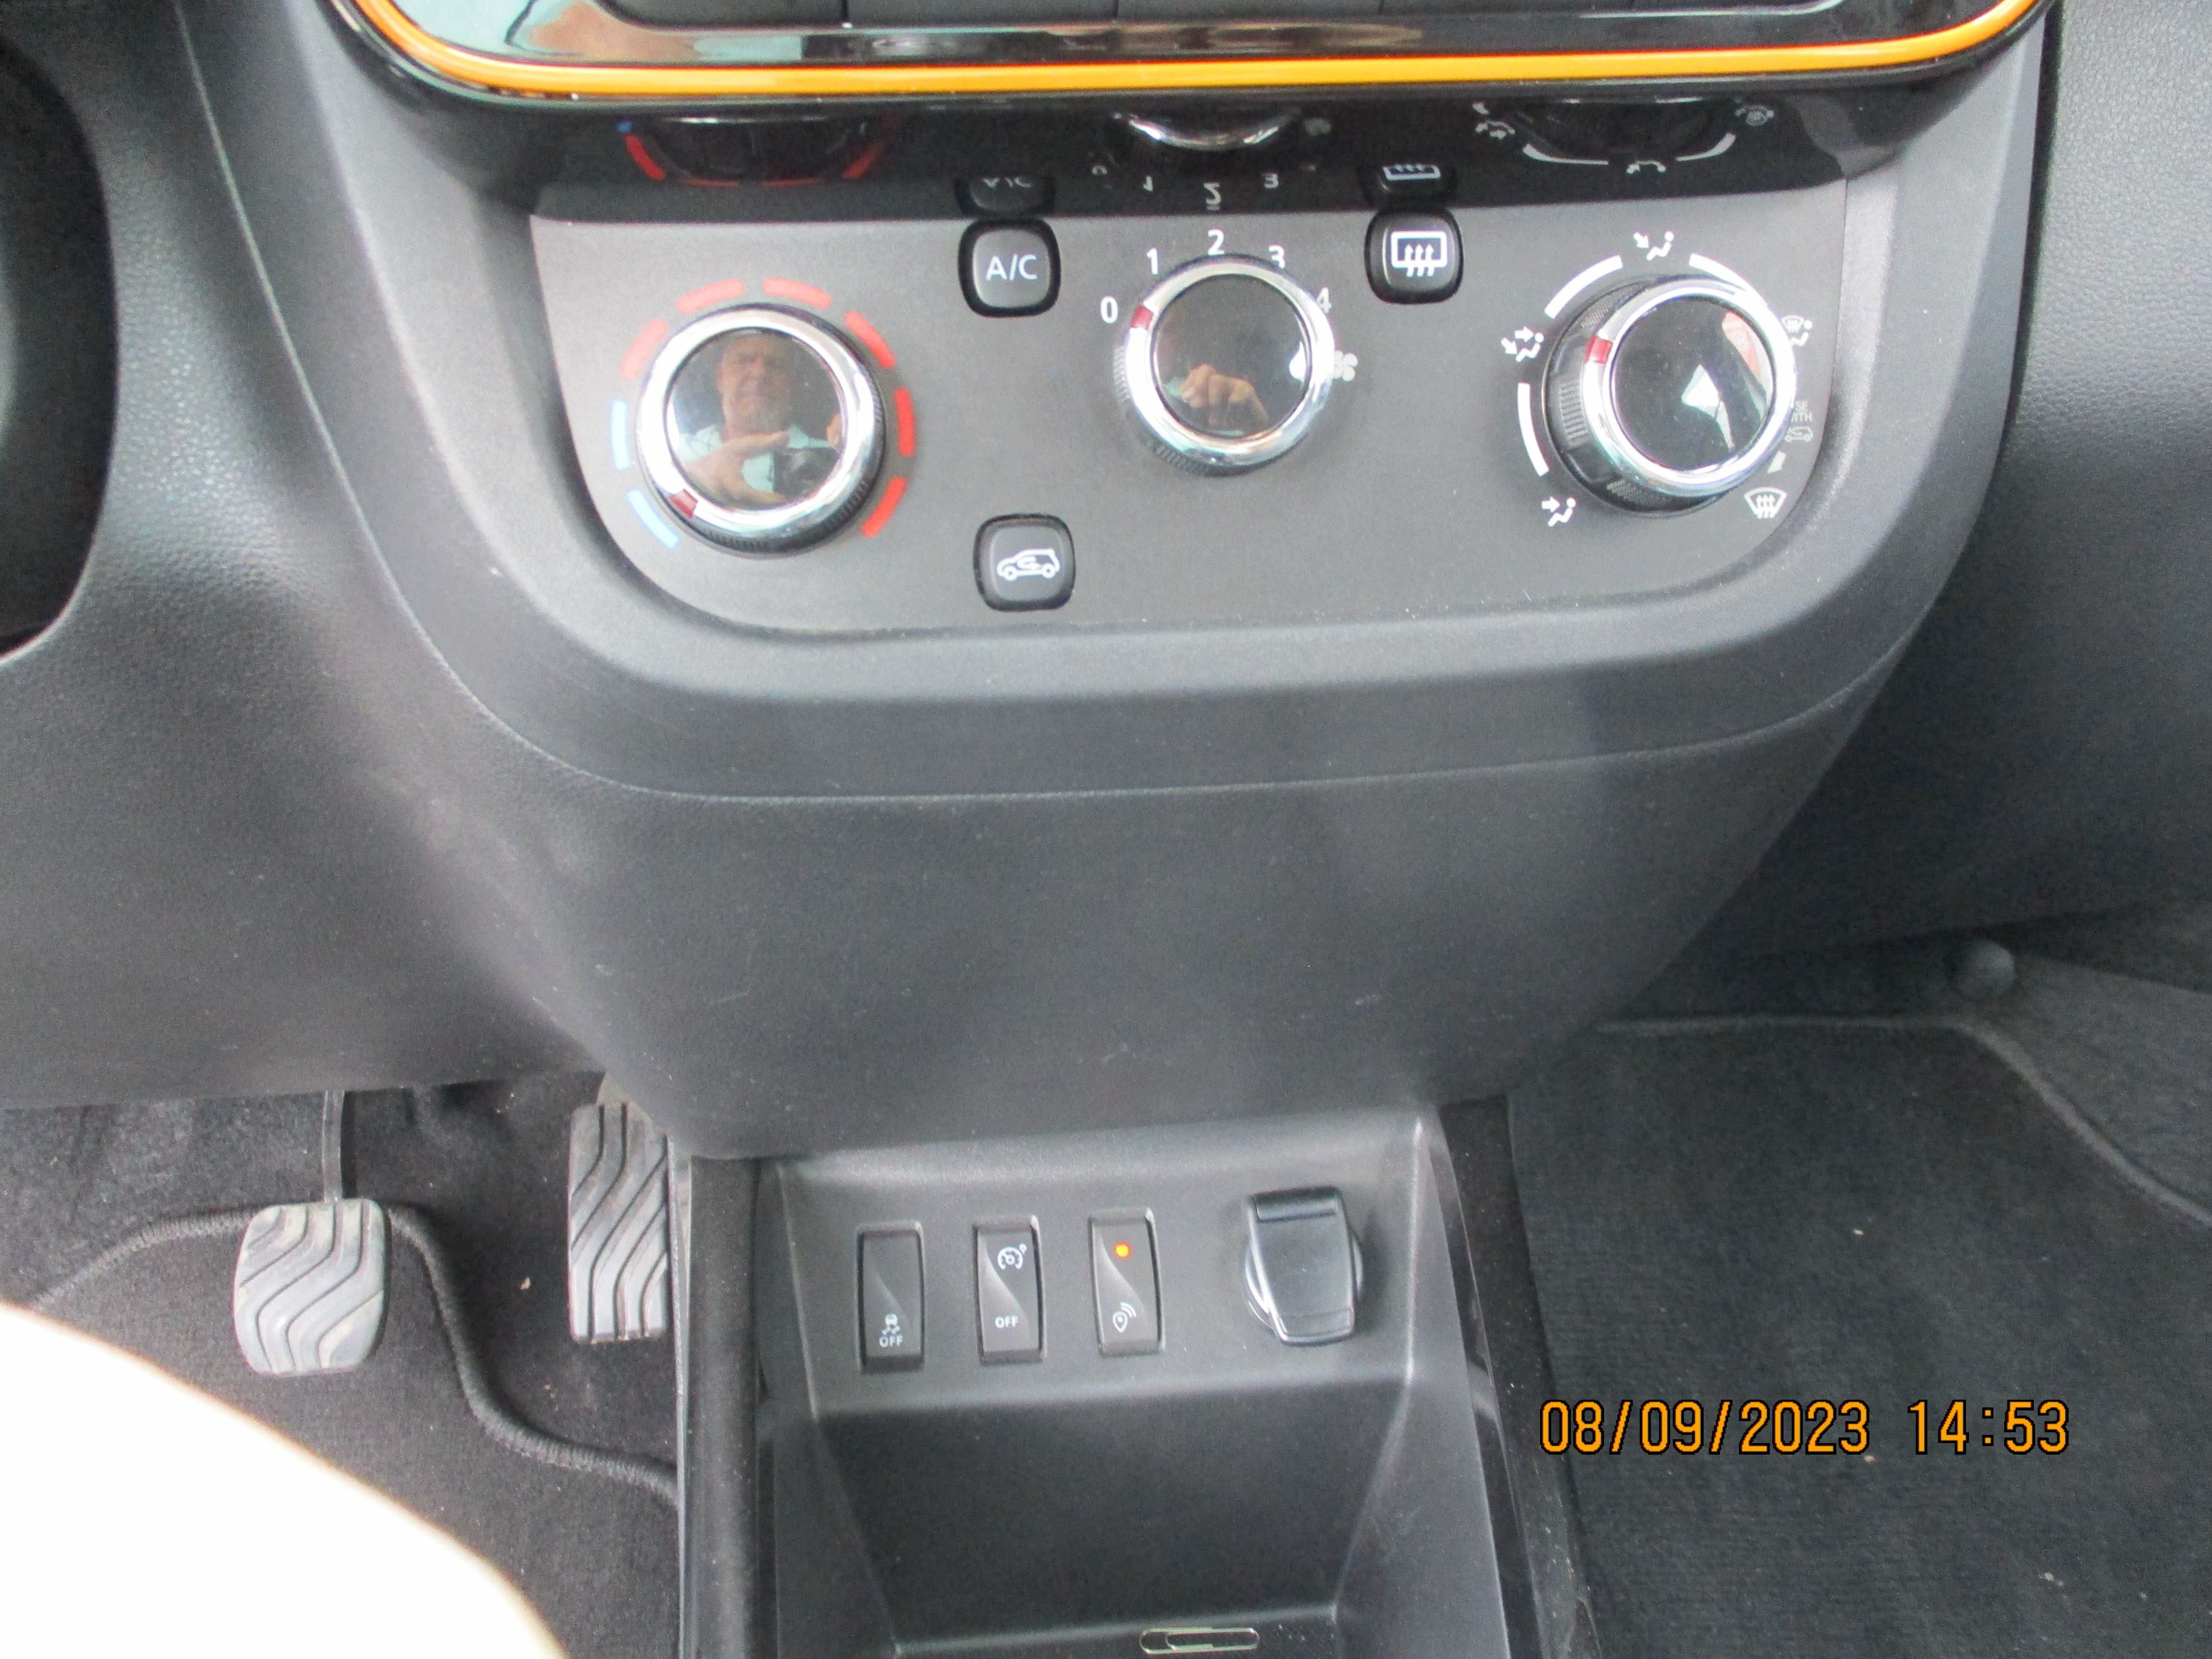 Dacia SPRING Comfort Plus 45